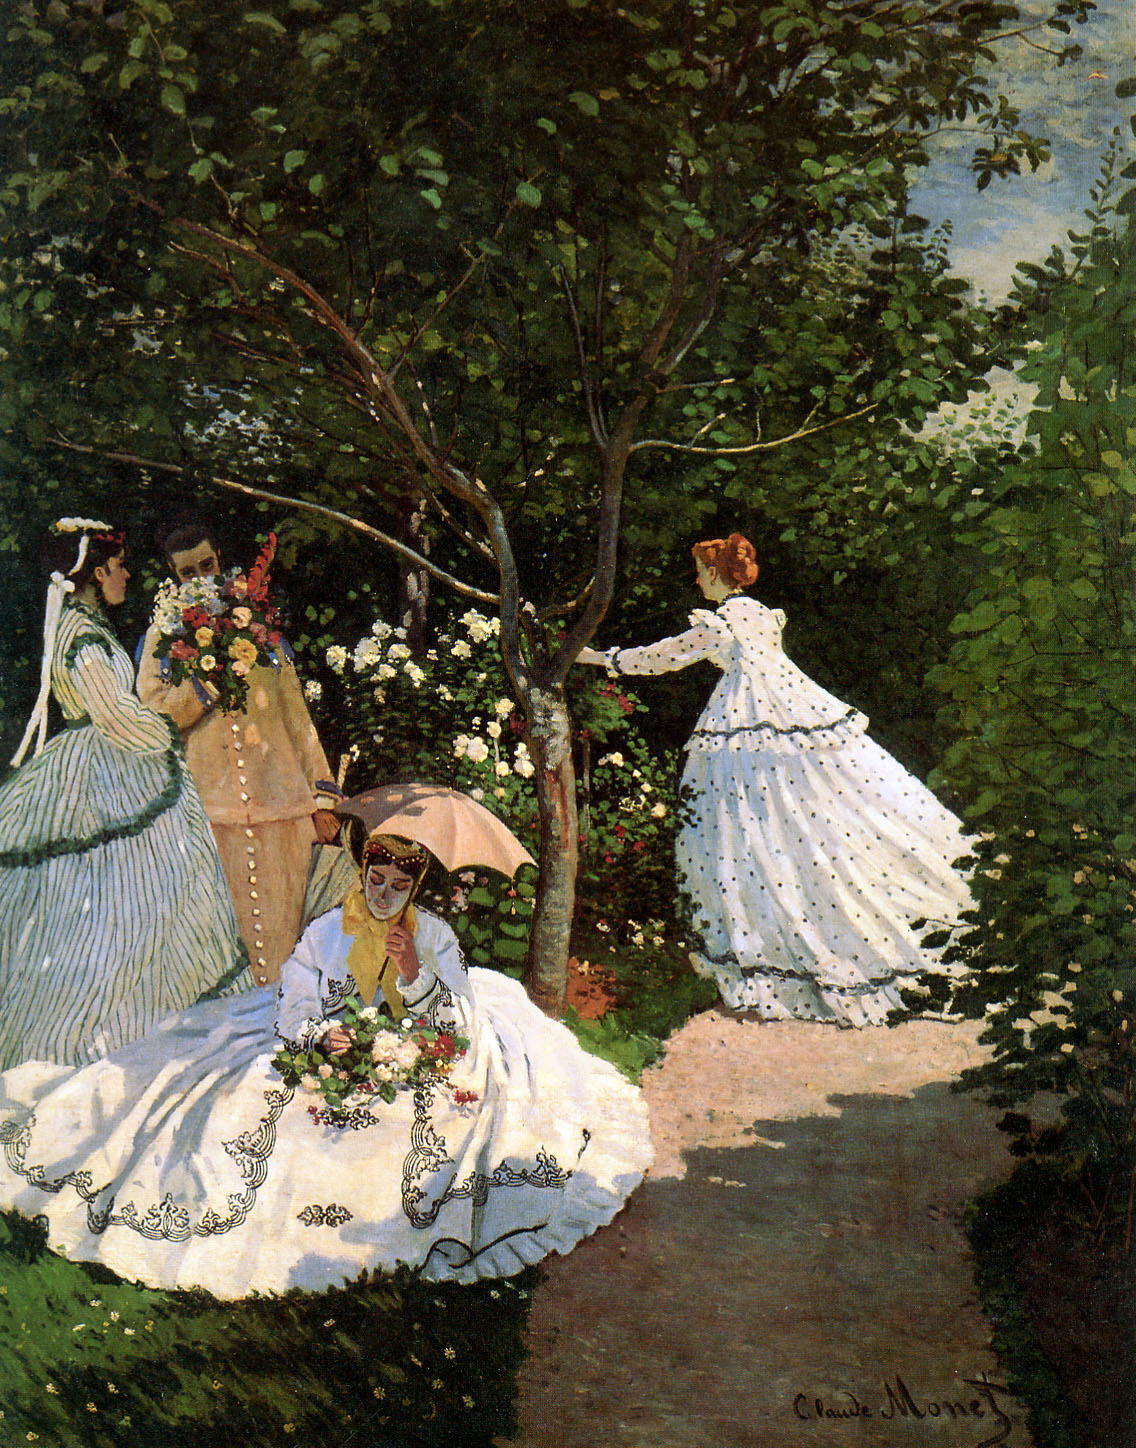 النساء في الحديقة - Women in the garden - مقهى جرير الثقافي